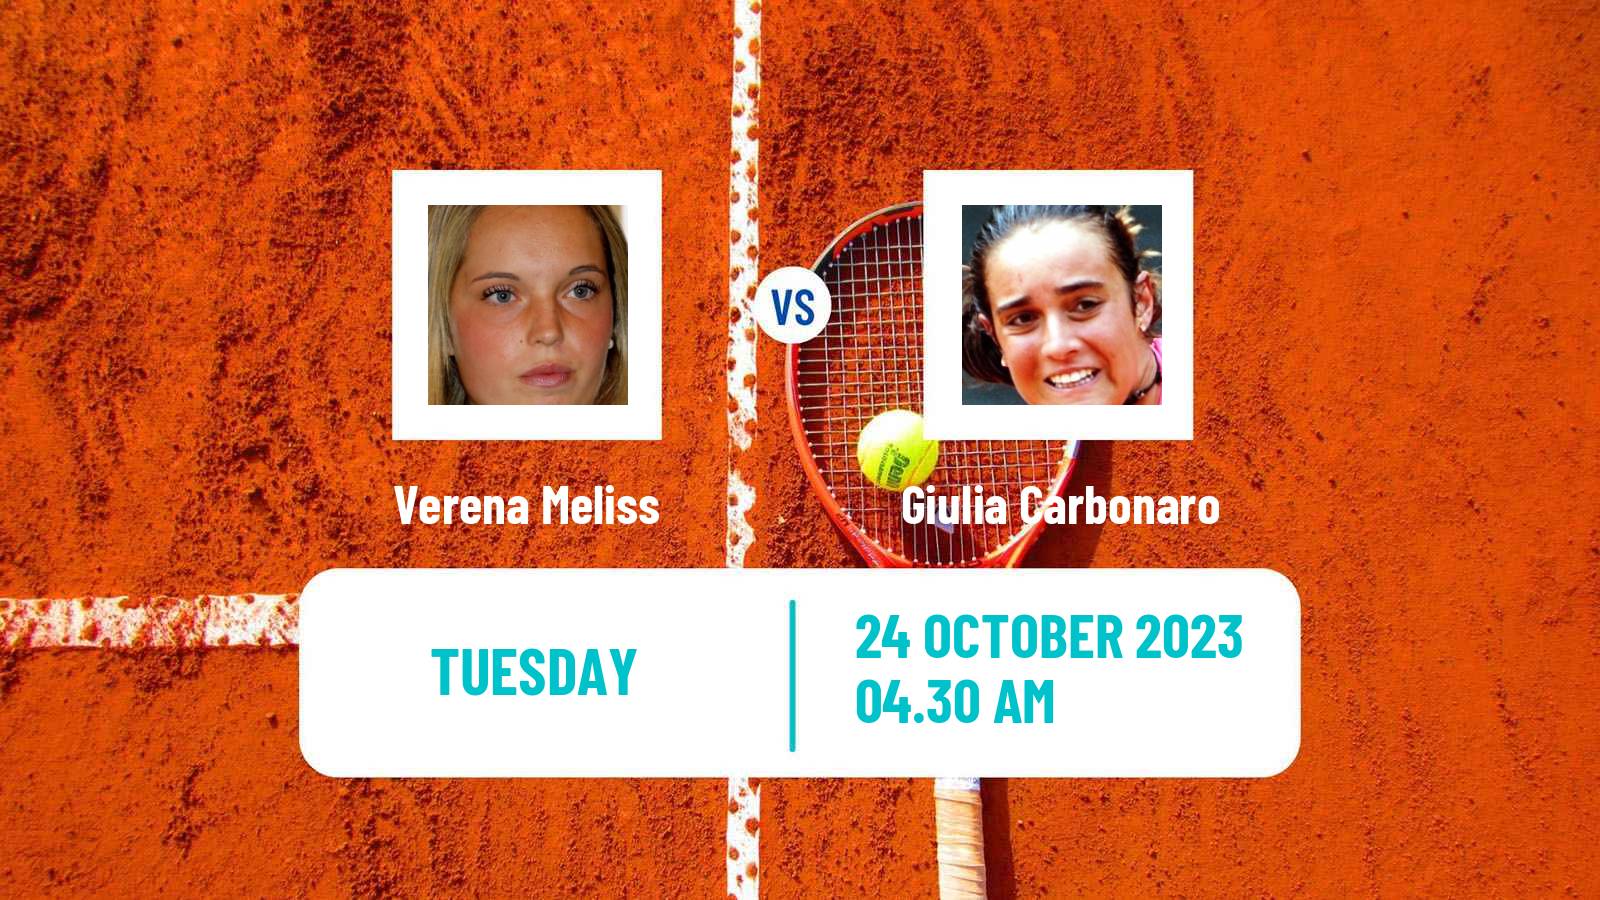 Tennis ITF W25 Santa Margherita Di Pula 12 Women 2023 Verena Meliss - Giulia Carbonaro